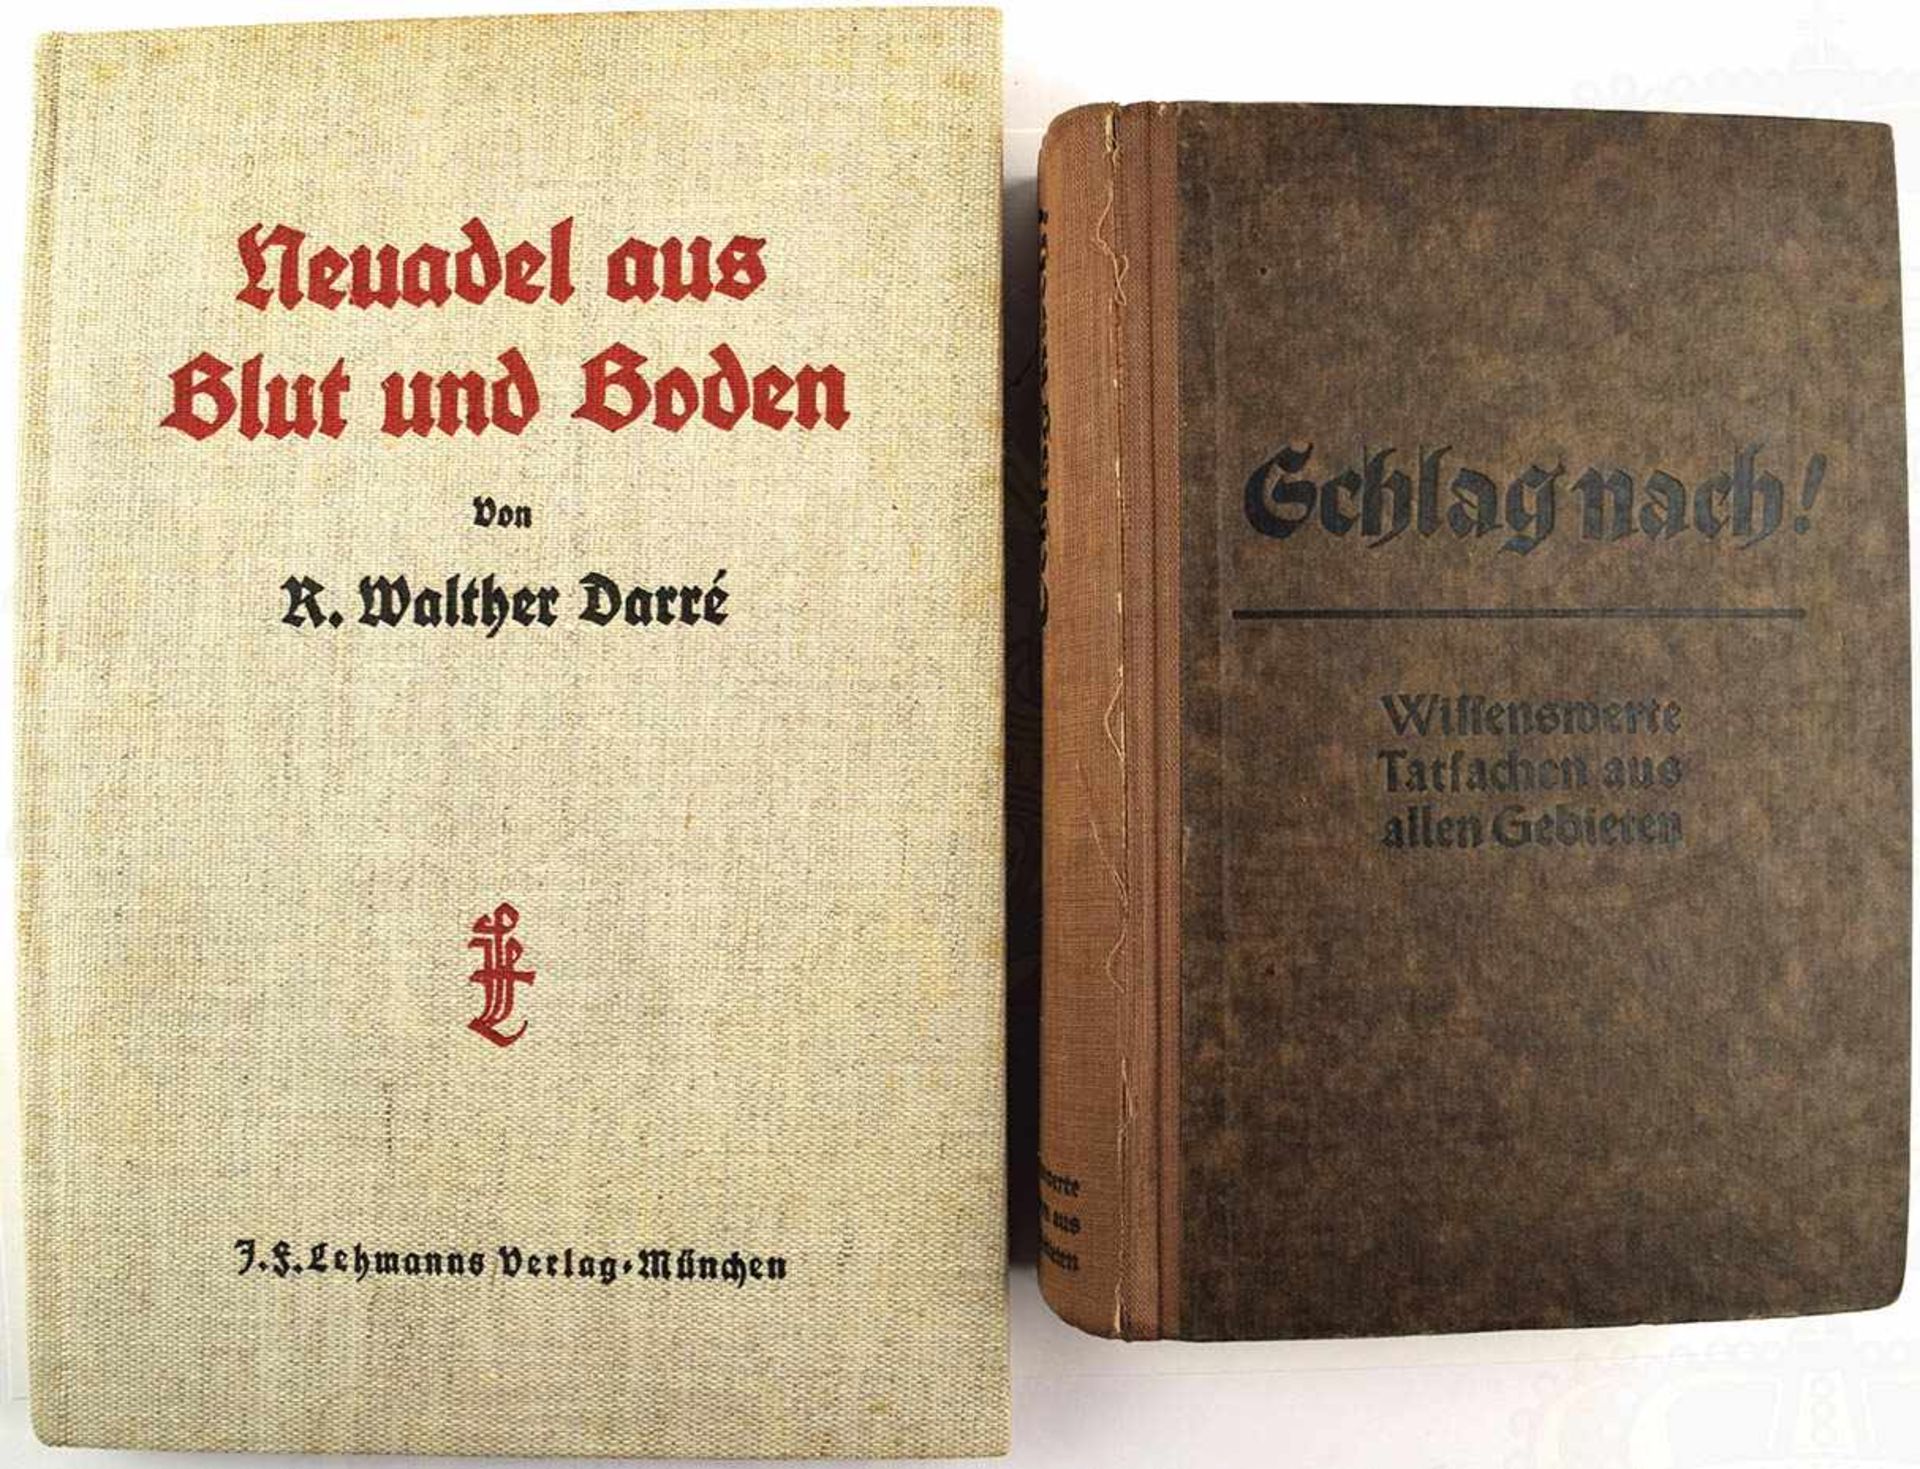 2 TITEL, Neuadel aus Blut und Boden; Schlag nach!, München/Leipzig 1934/1939, ges. ca. 950 S.,